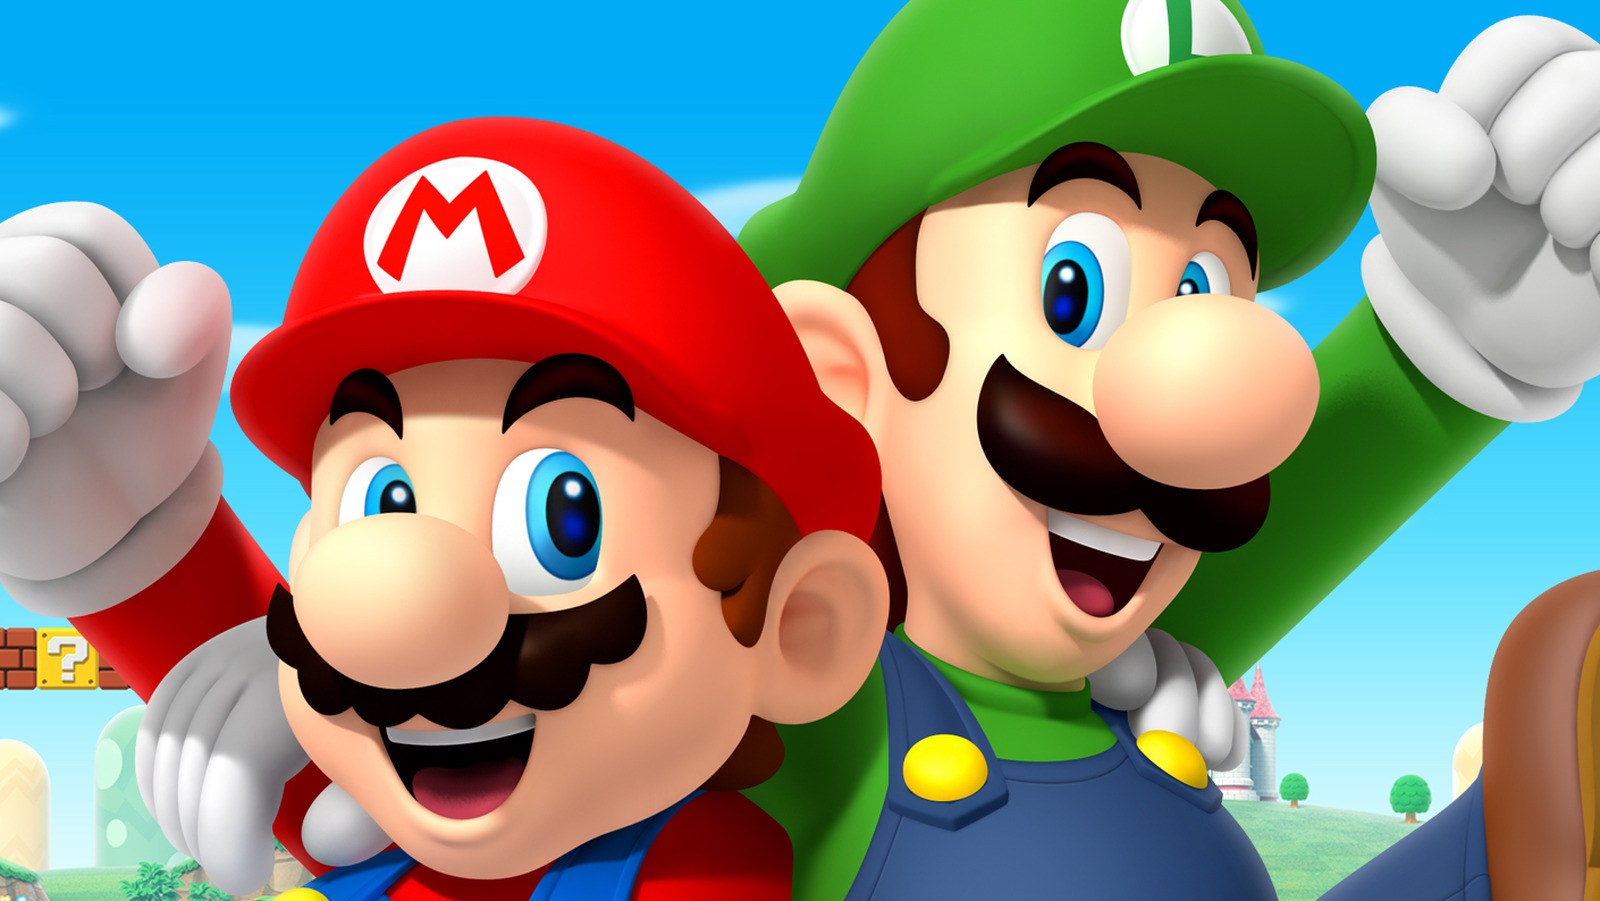 Mario vs luigi. Марио. Марио или Луиджи. Супер Марио. Супер Марио и Луиджи.